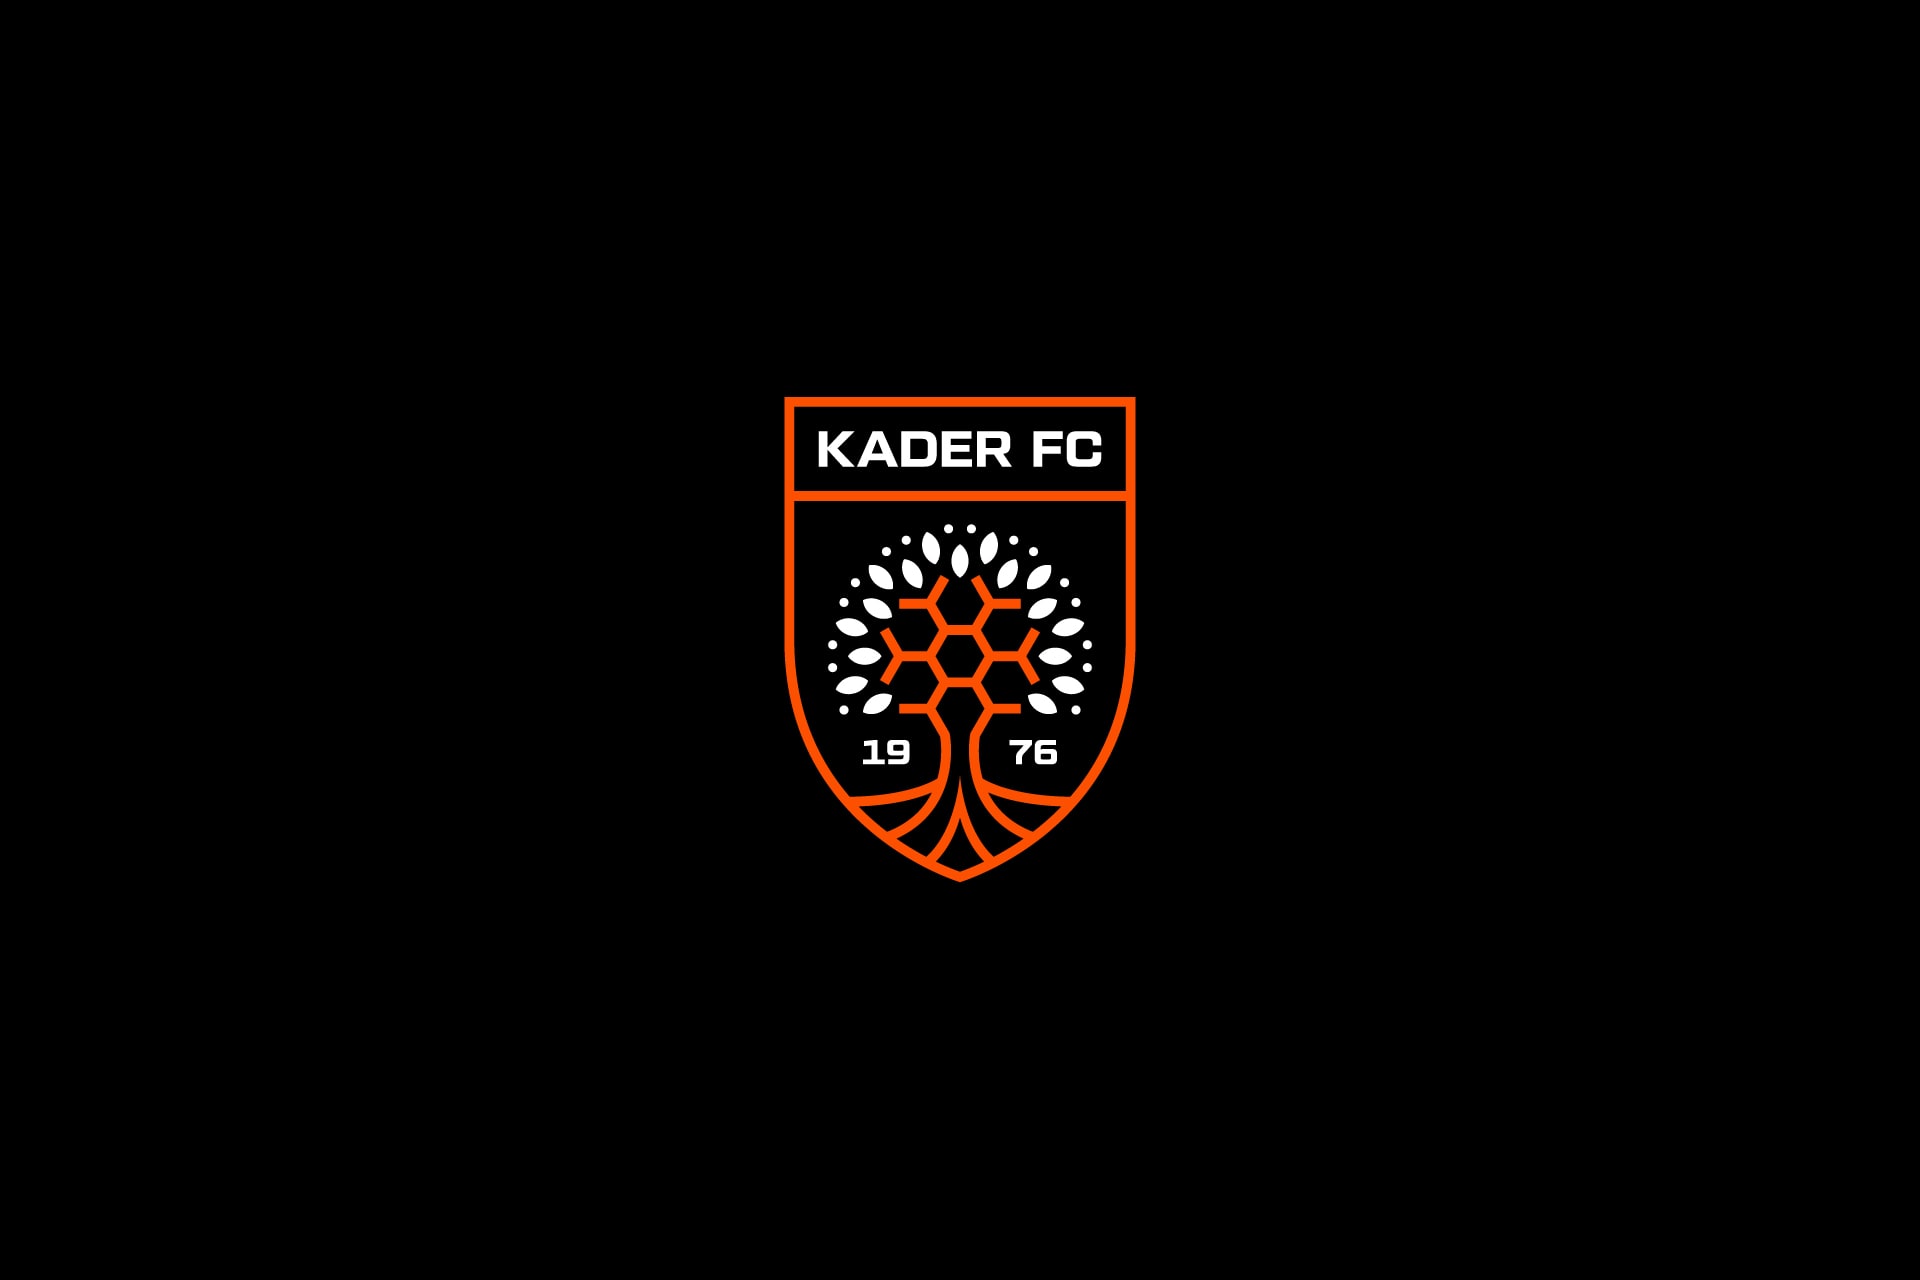 Kader Football Club Crest Design